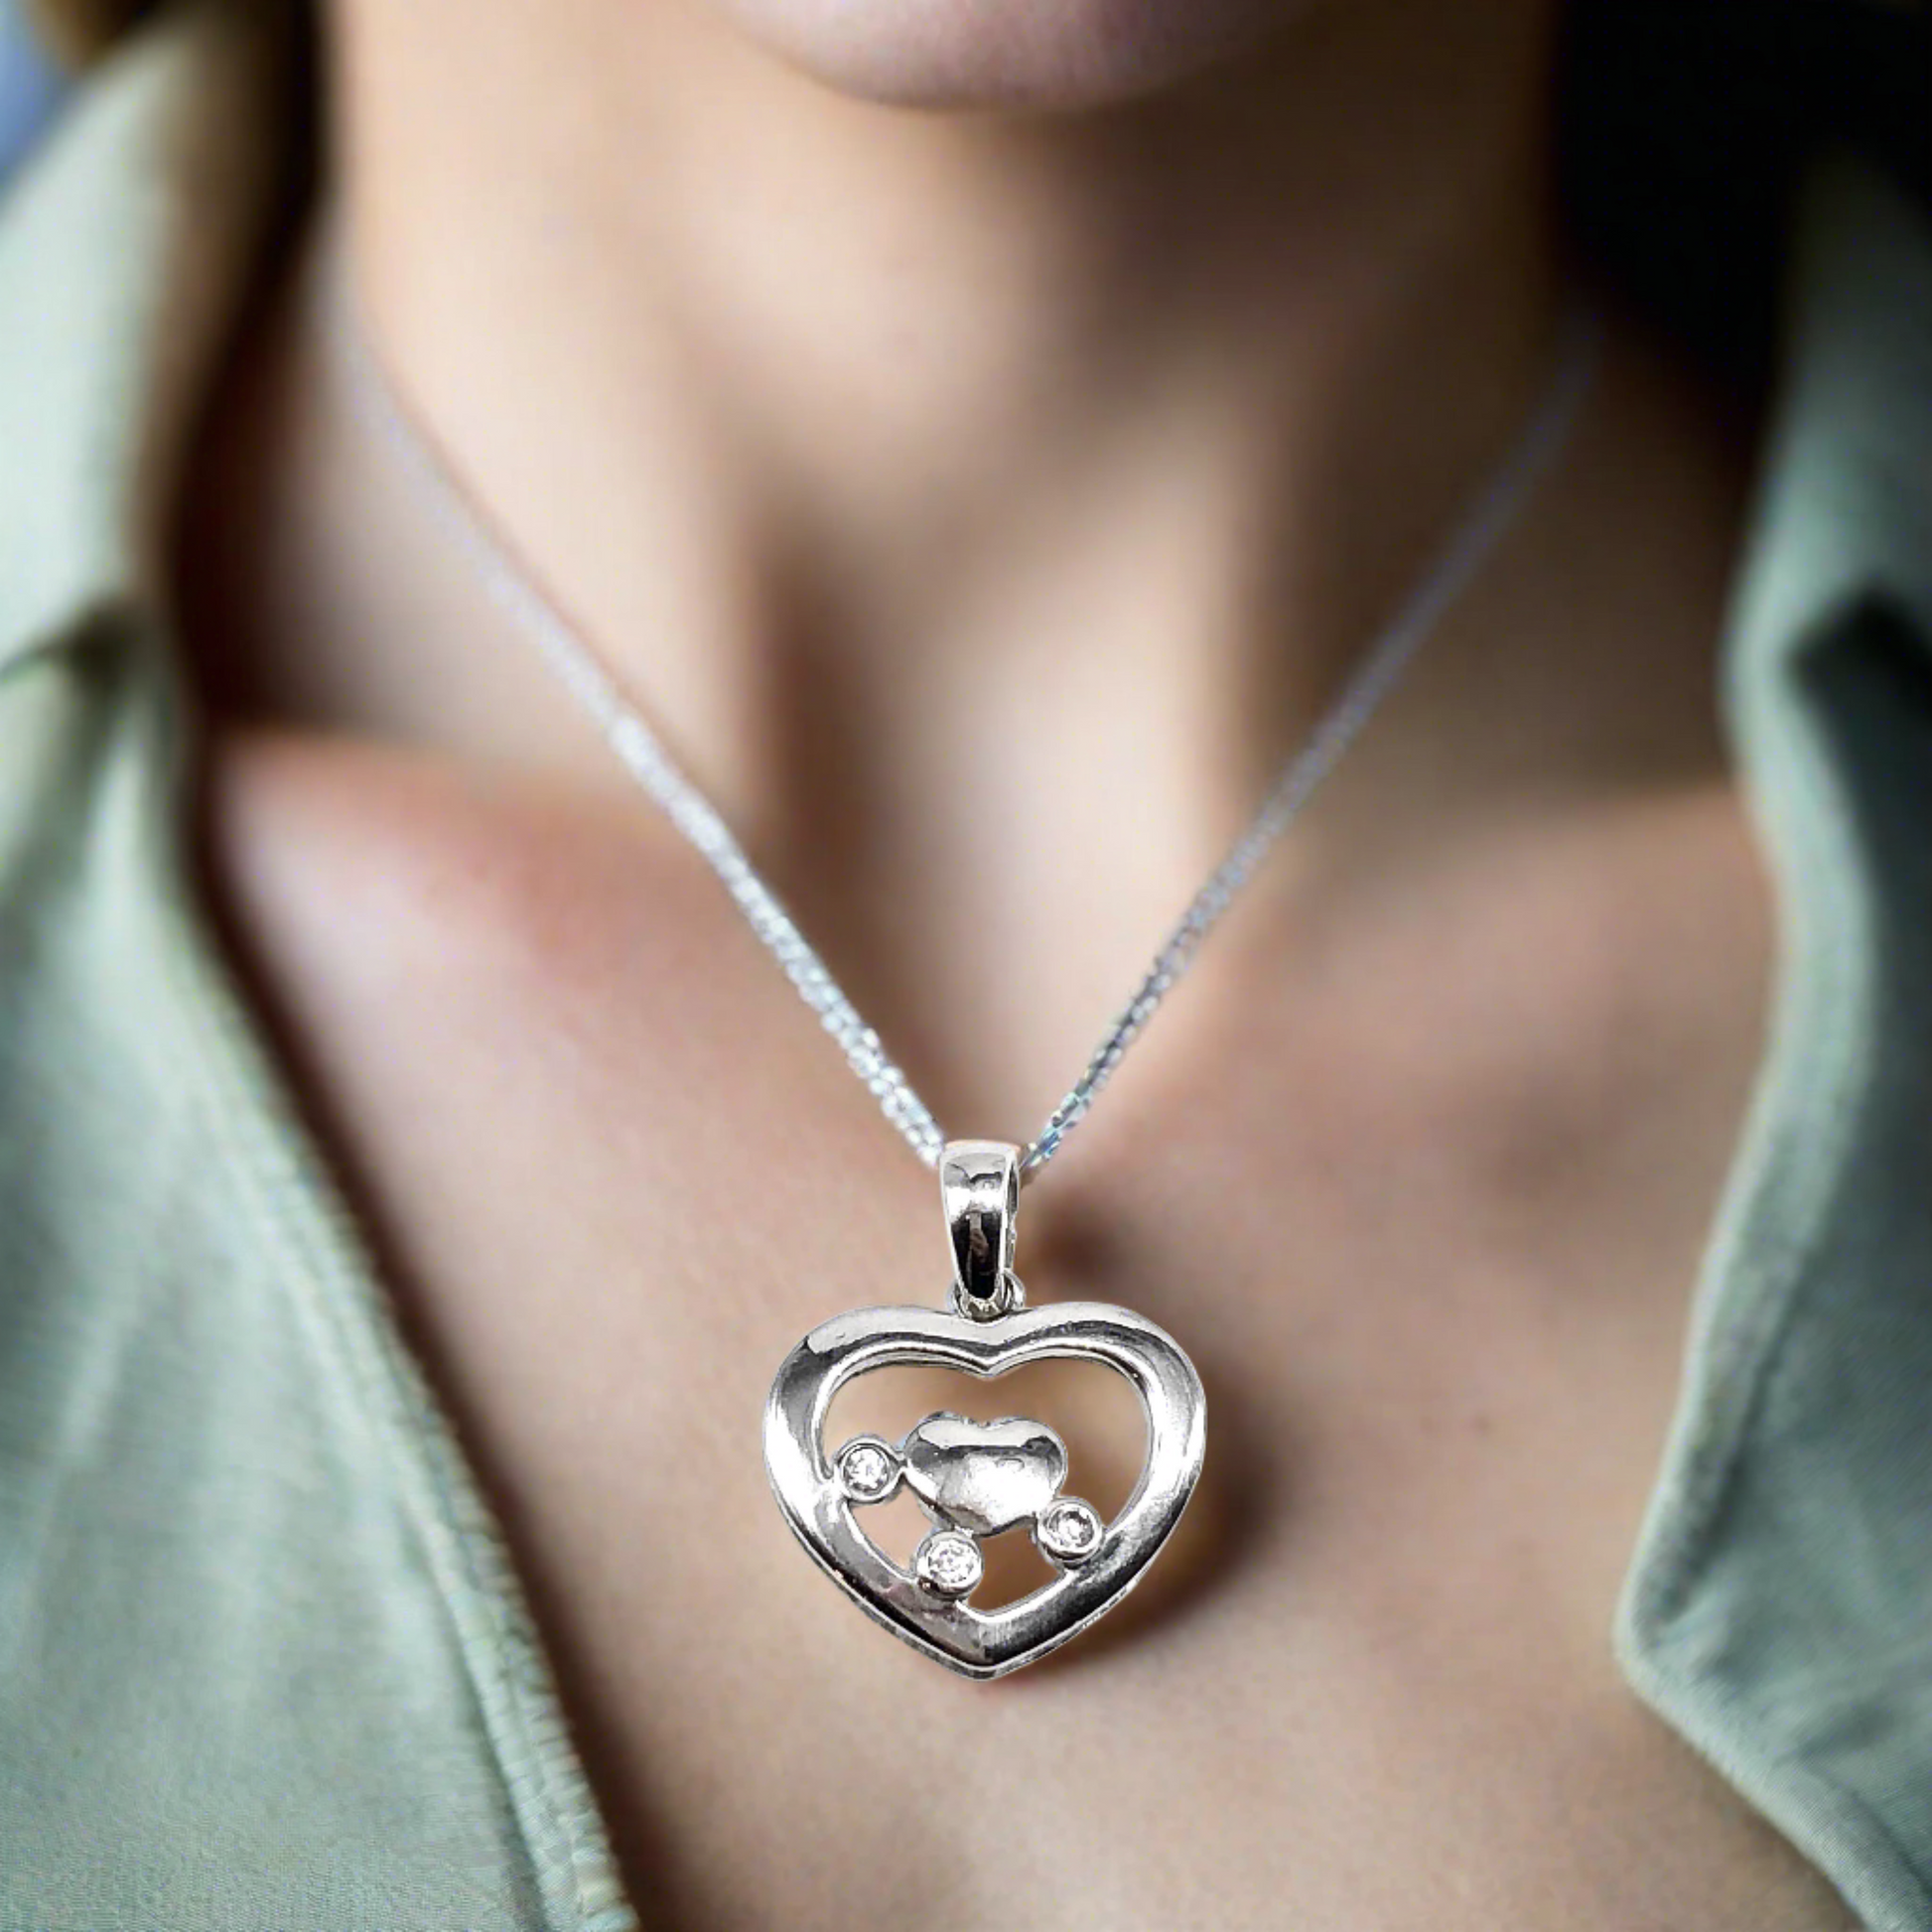 Heart Pendant, Women's White Cubic Zirconia Stone Heart Design Sterling Silver Pendant - Blingschlingers